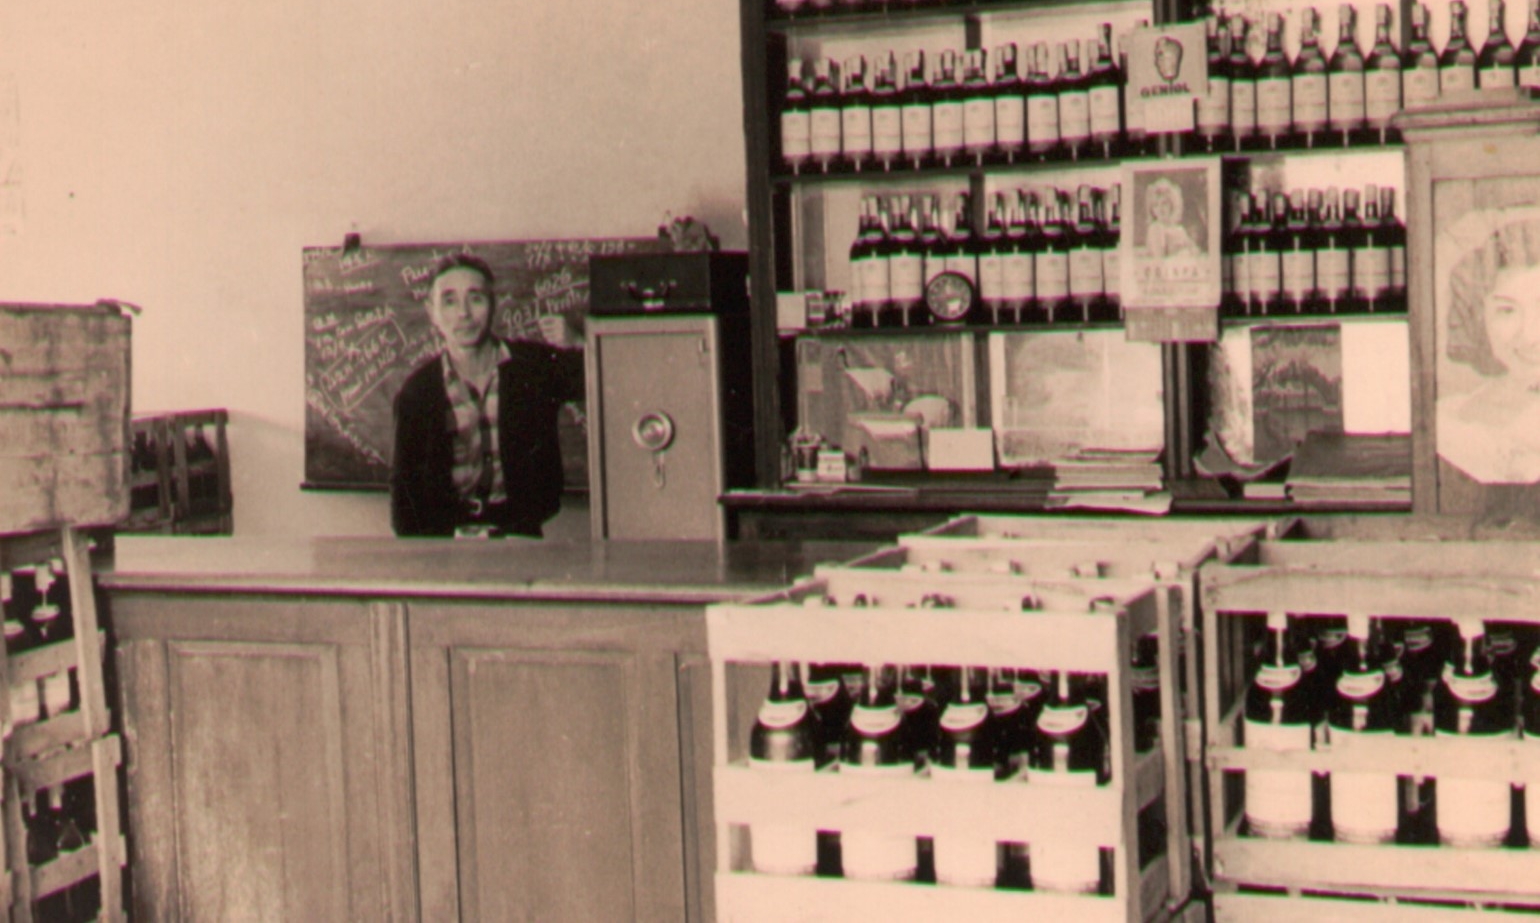 初代販売所内部。写真の人物は1958年より20年間販売所長（※）を務めた奈良米蔵氏